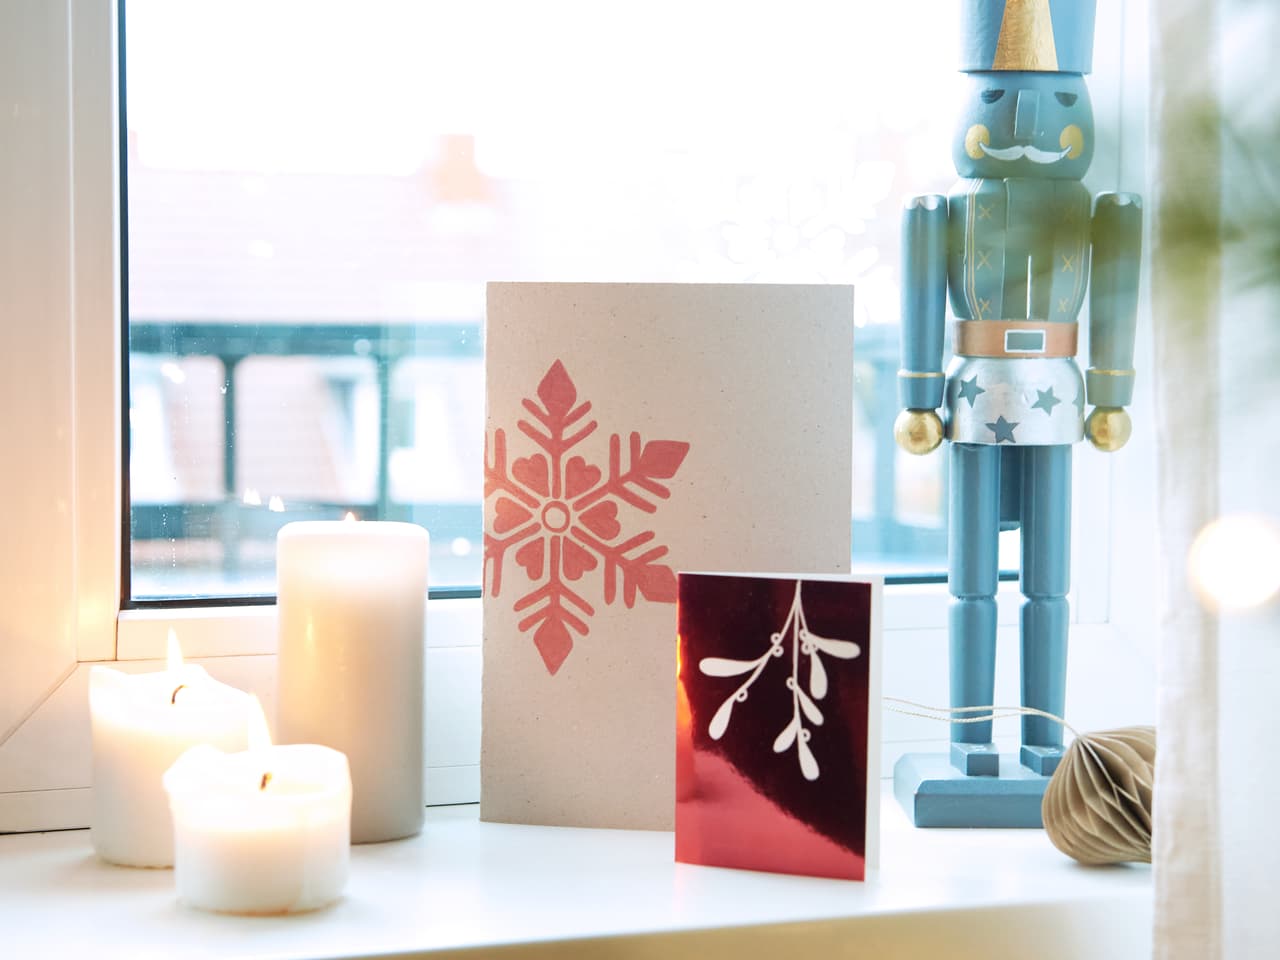 Eine gemütliche Weihnachtsdekoration mit einer Nussknackerfigur, die Wache neben Grußkarten steht, Kerzen, die einen warmen Schein verbreiten, und das alles vor einem sanft beleuchteten Fenster mit edding 1340 metallischen Pinselstift-Dekorationen.